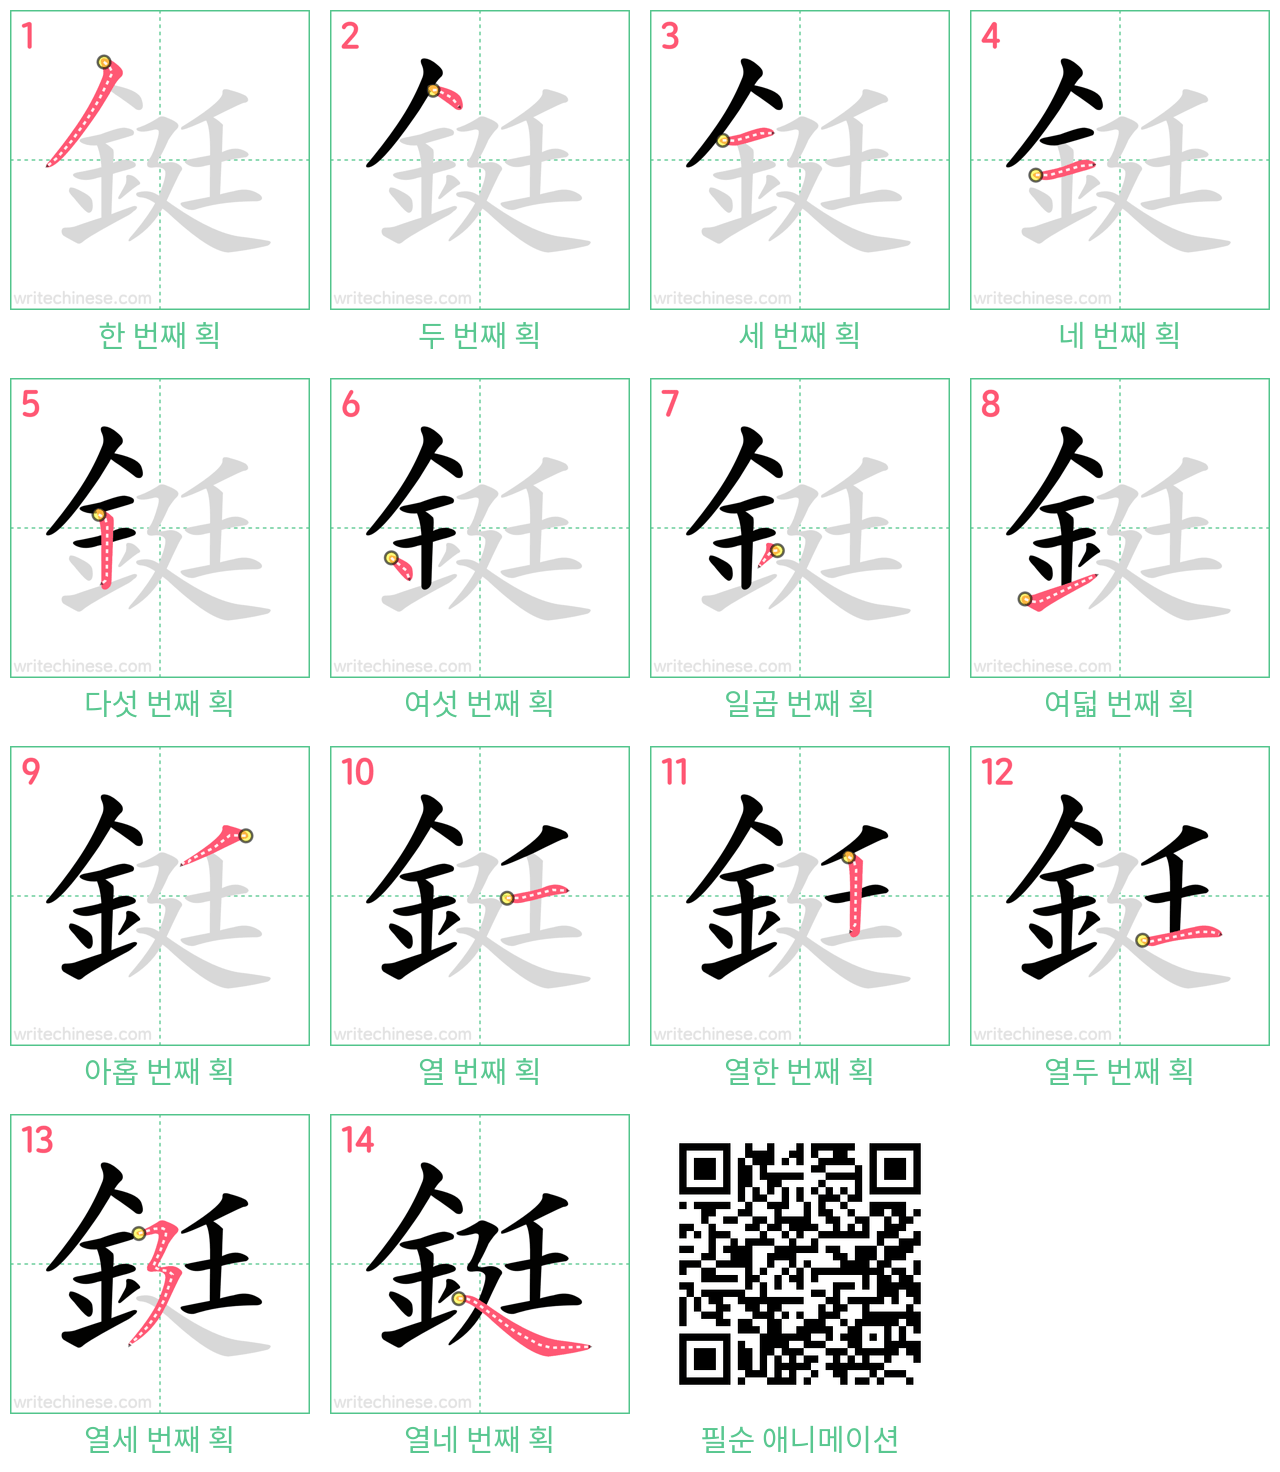 鋌 step-by-step stroke order diagrams